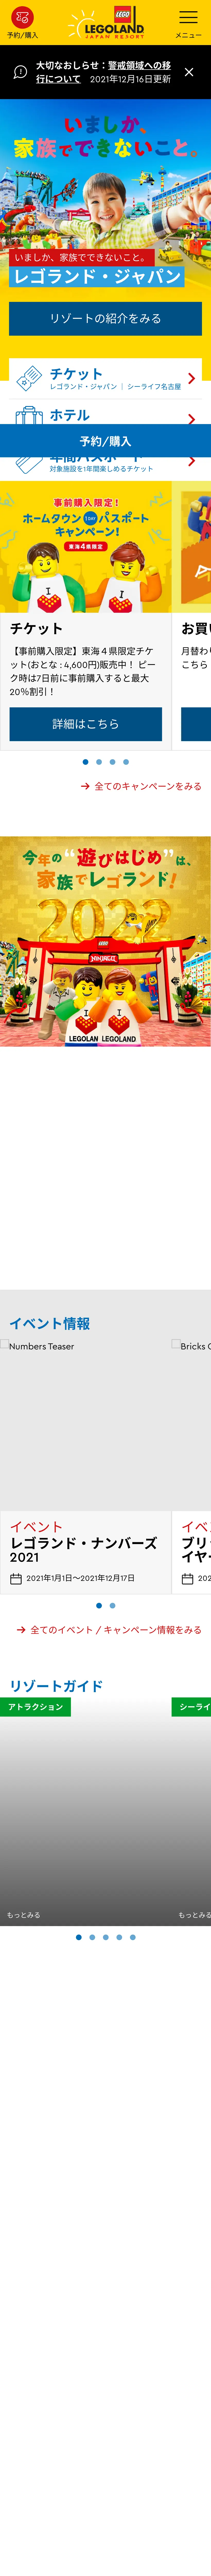 キャプチャ画面 会社名:LEGOLAND Japan合同会社プロジェクト名:LEGOLAND® 画面名:A デバイス名:SPカテゴリ:アミューズメントタグ:A,SP